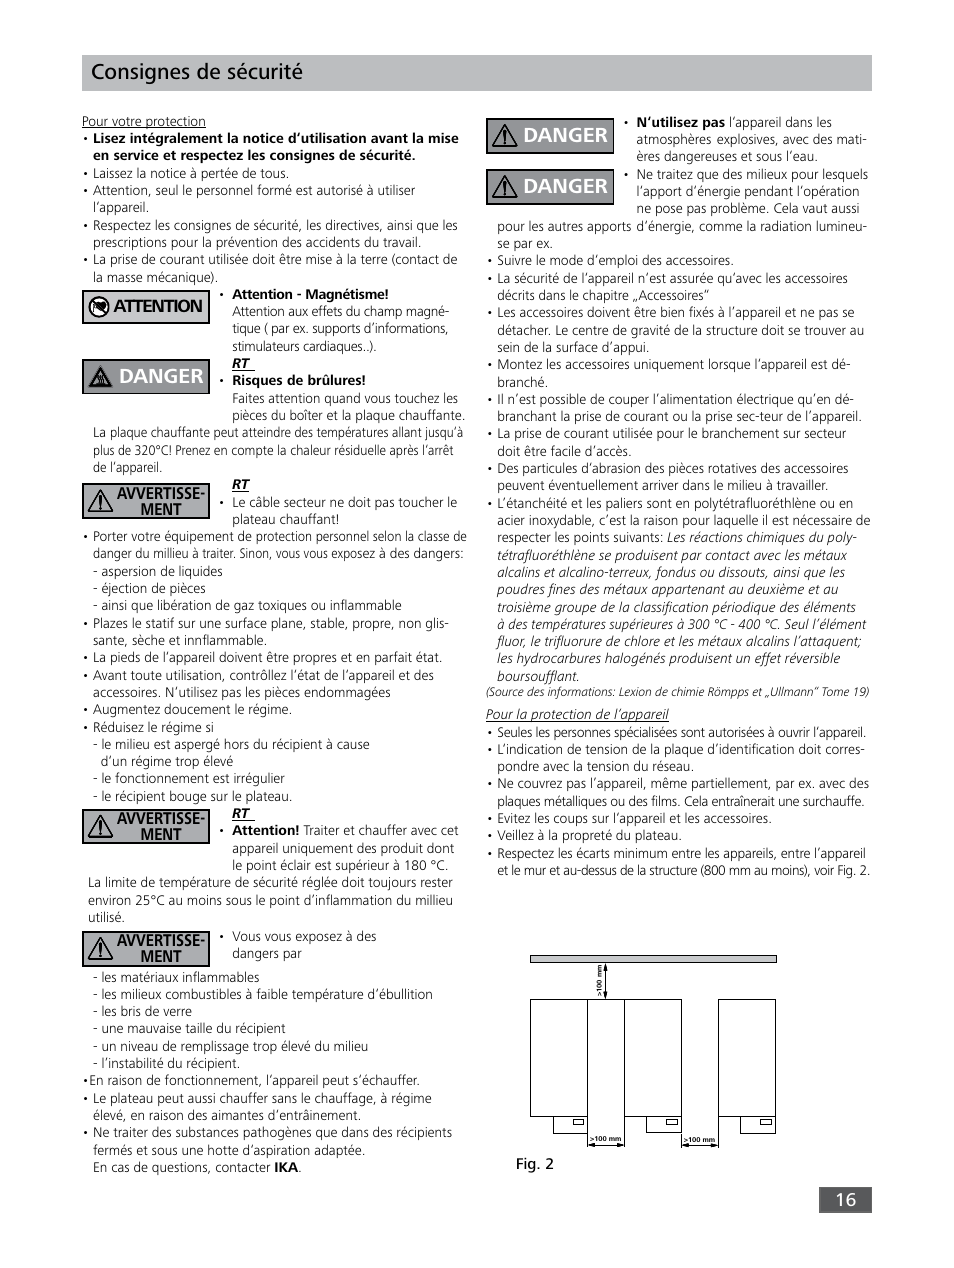 Consignes de sécurité, Danger, Attention | IKA RO 15 User Manual | Page 16 / 40